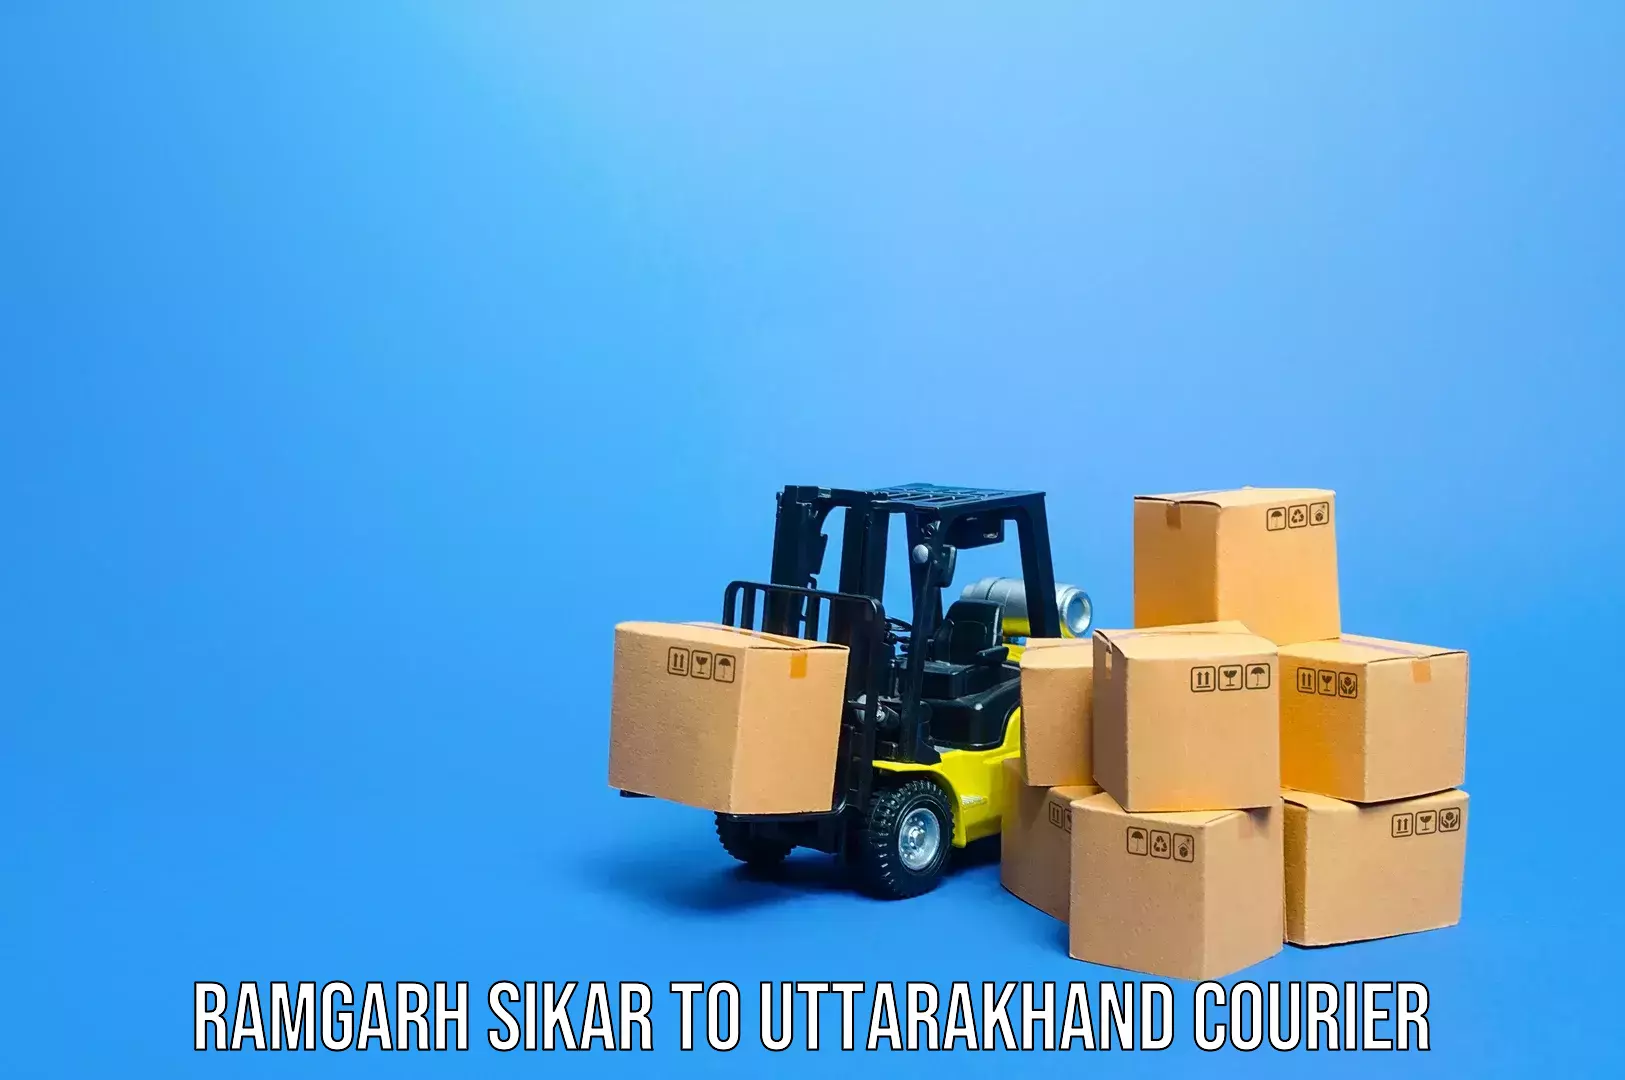 Luggage delivery optimization Ramgarh Sikar to Uttarakhand